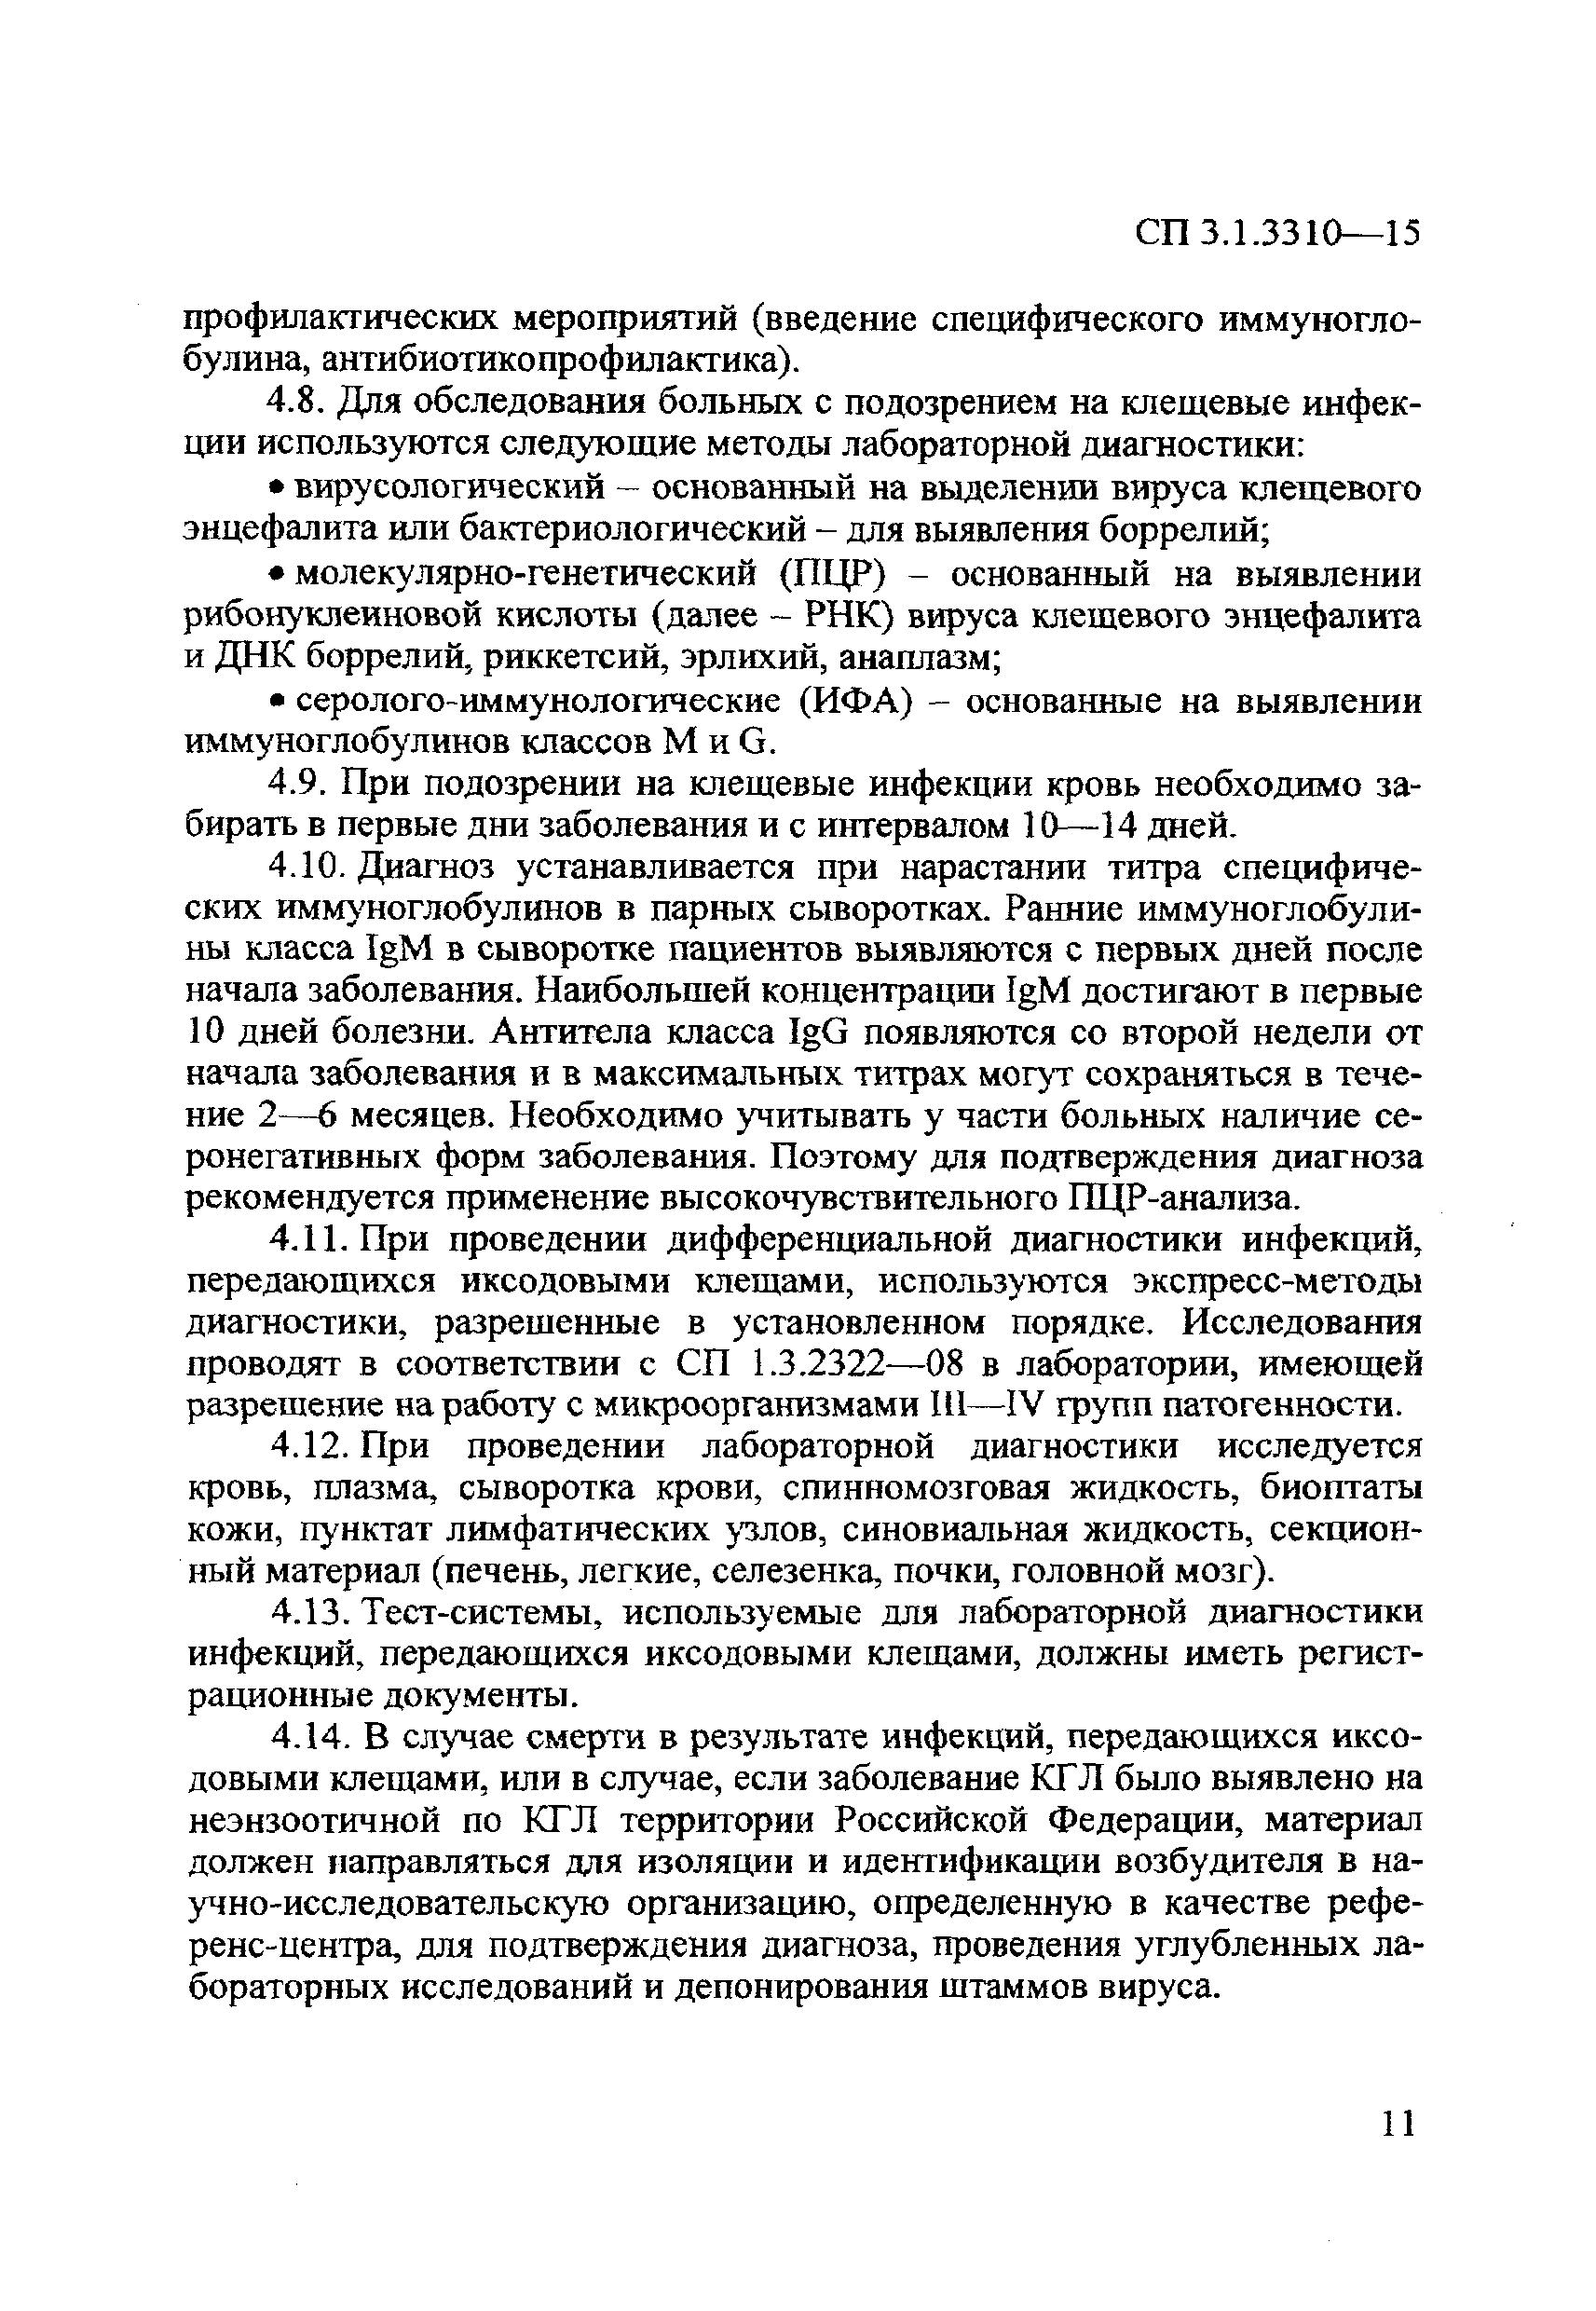 СП 3.1.3310-15